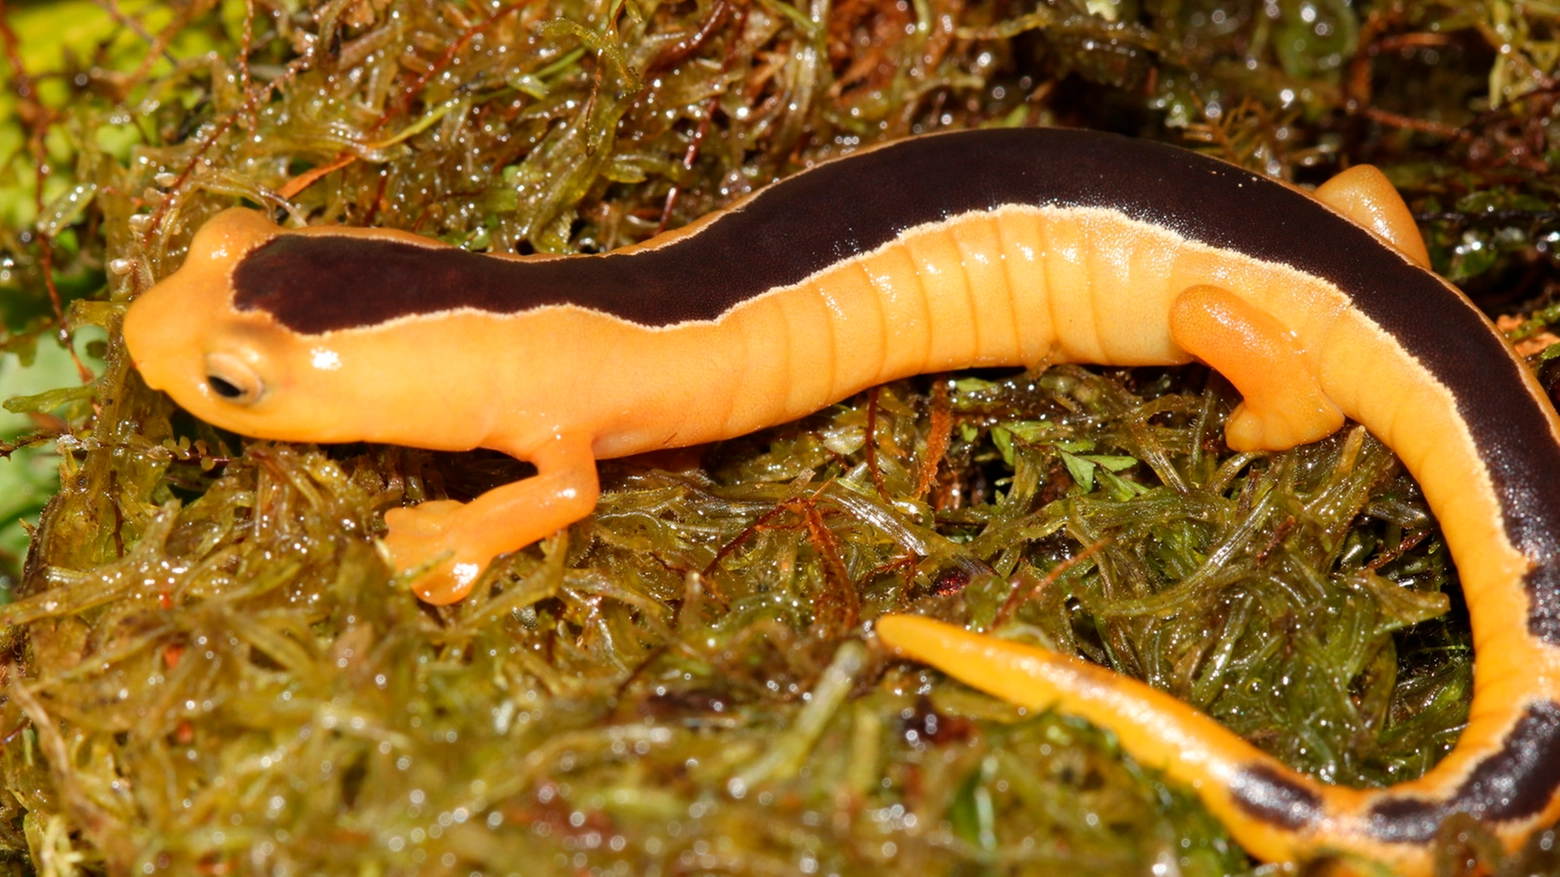 La rarissima salamandra (Foto: Carlos Vasquez Almazan)